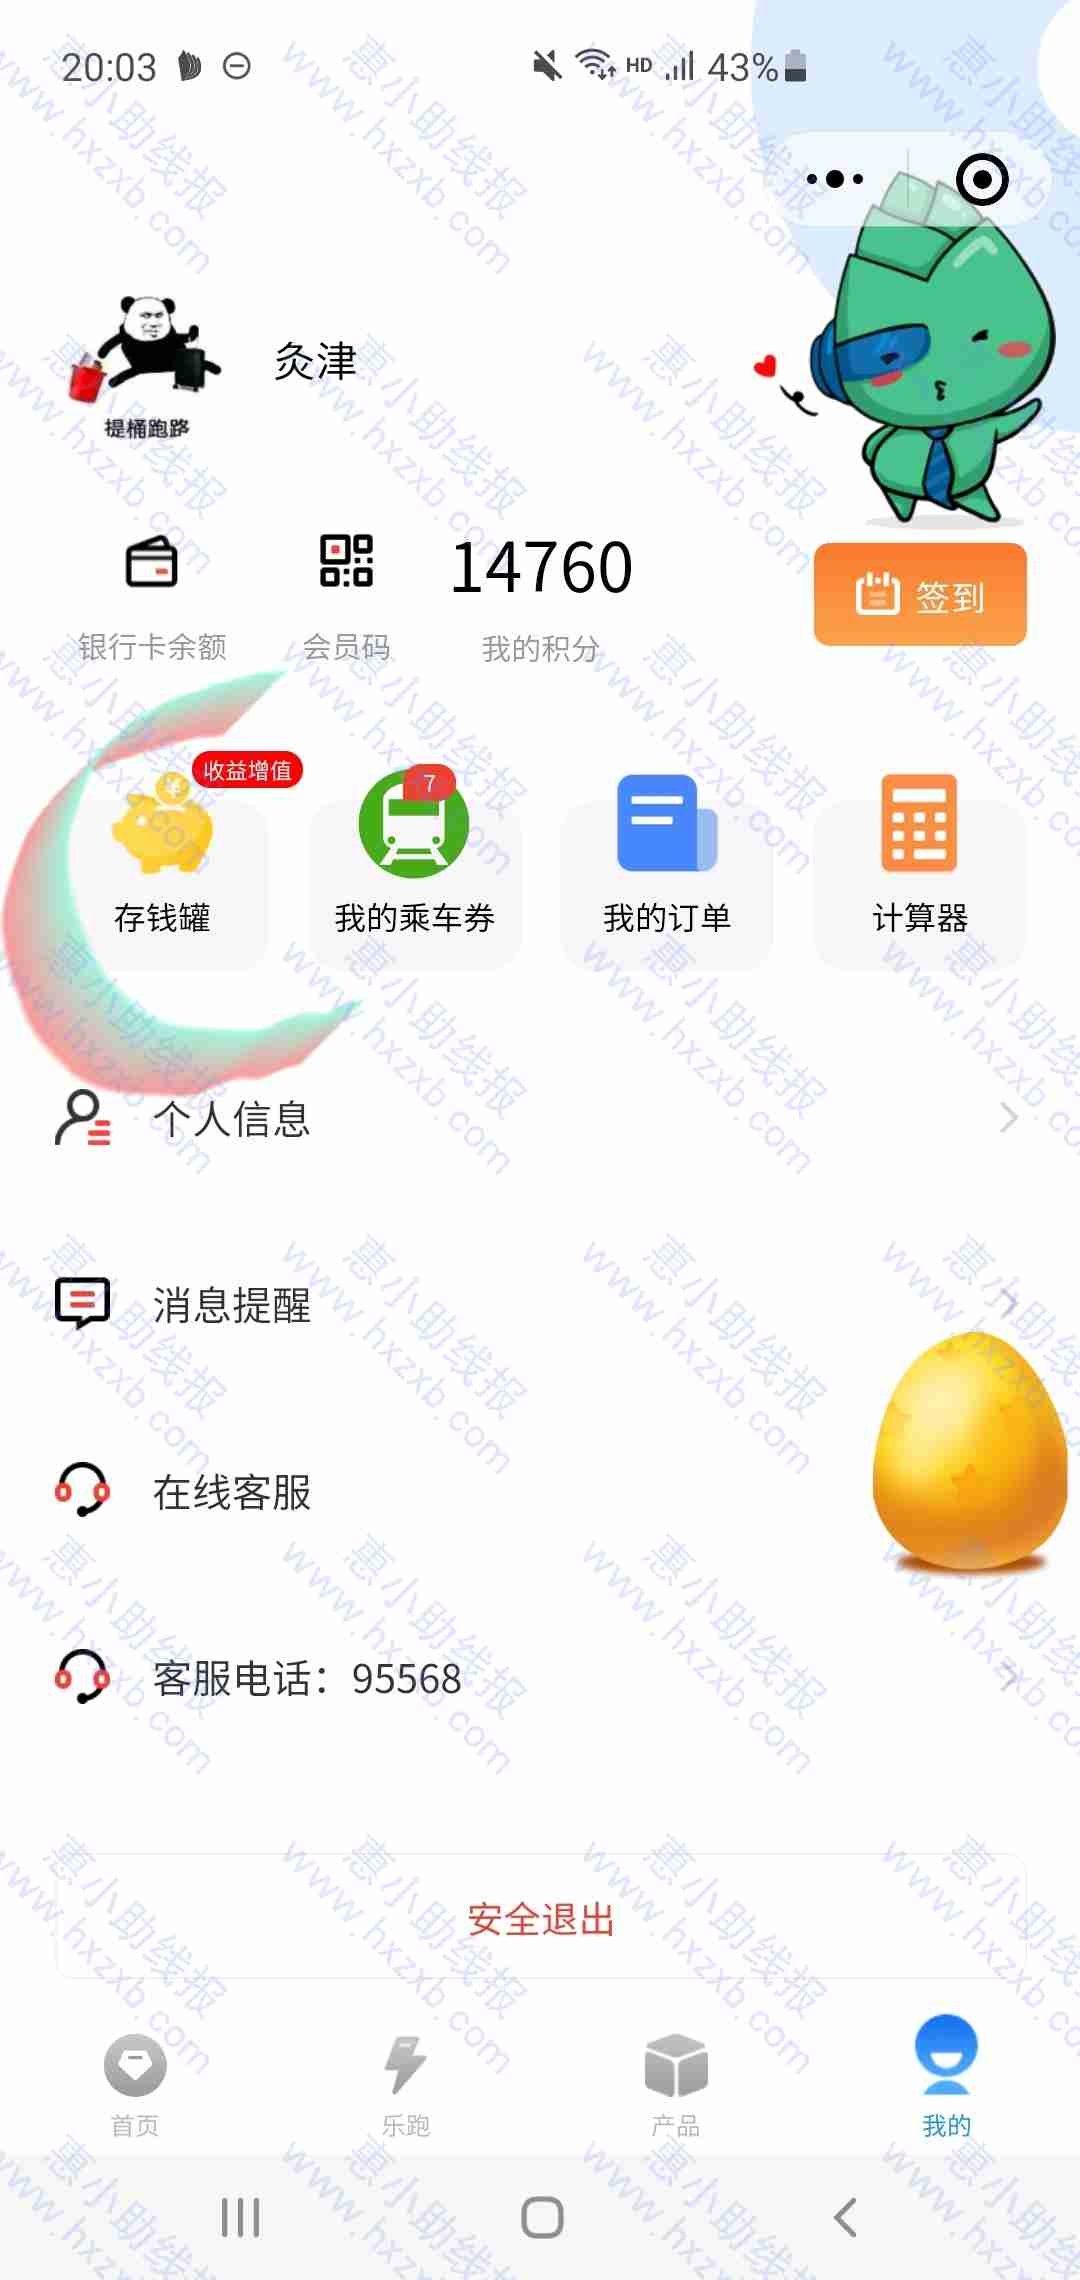 民生银行深圳fun 10元立减金